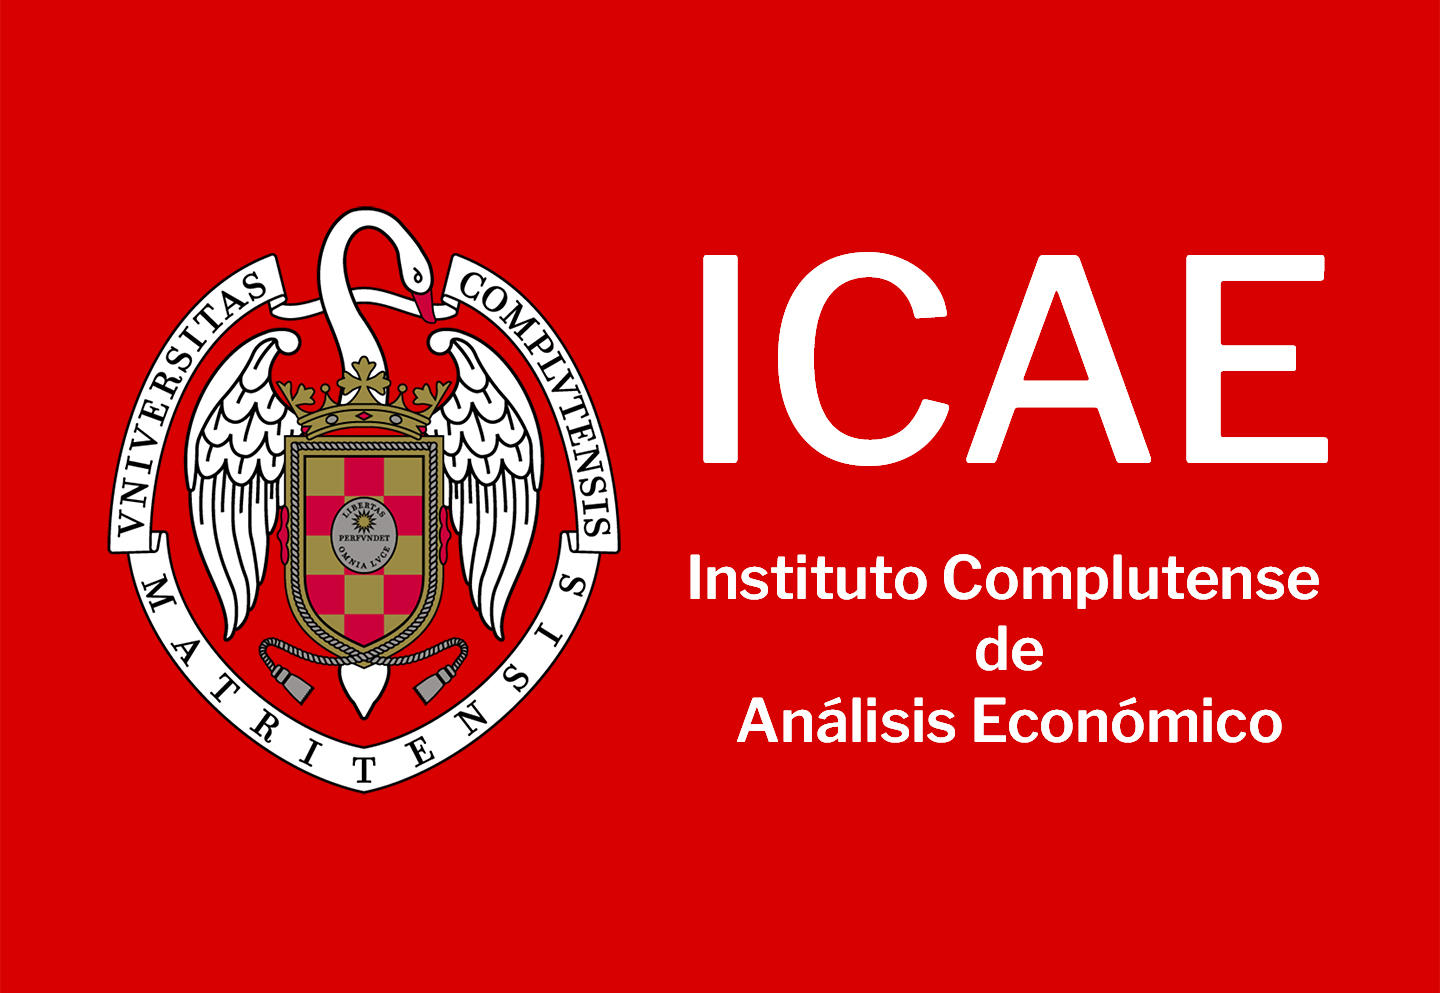 Logo ICAE 1.440 x 993 px JPG